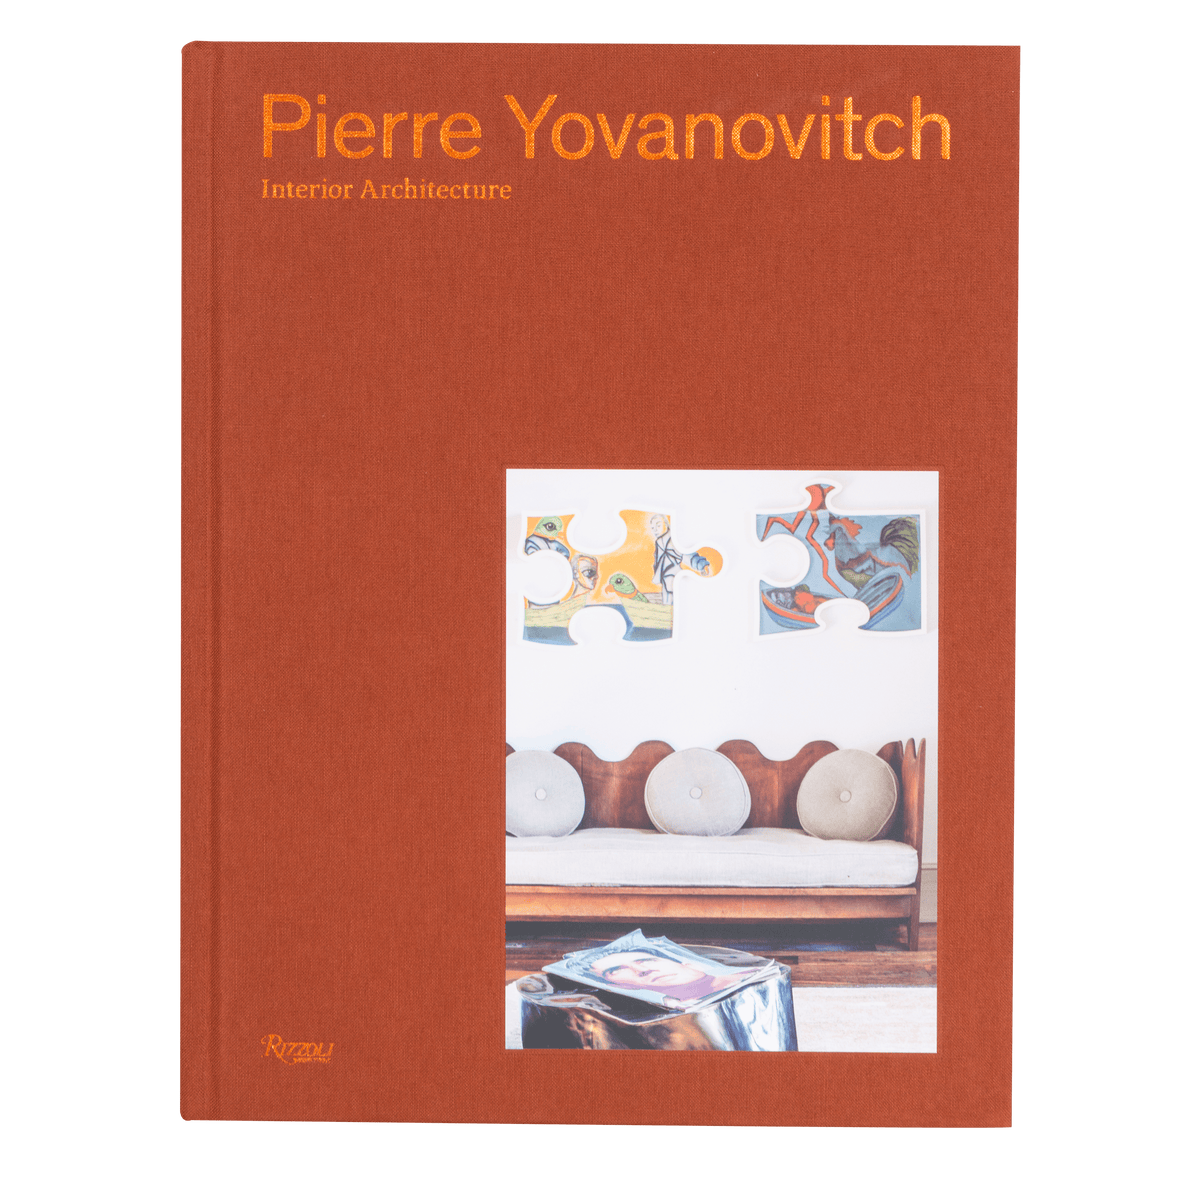 Pierre Yovanovitch